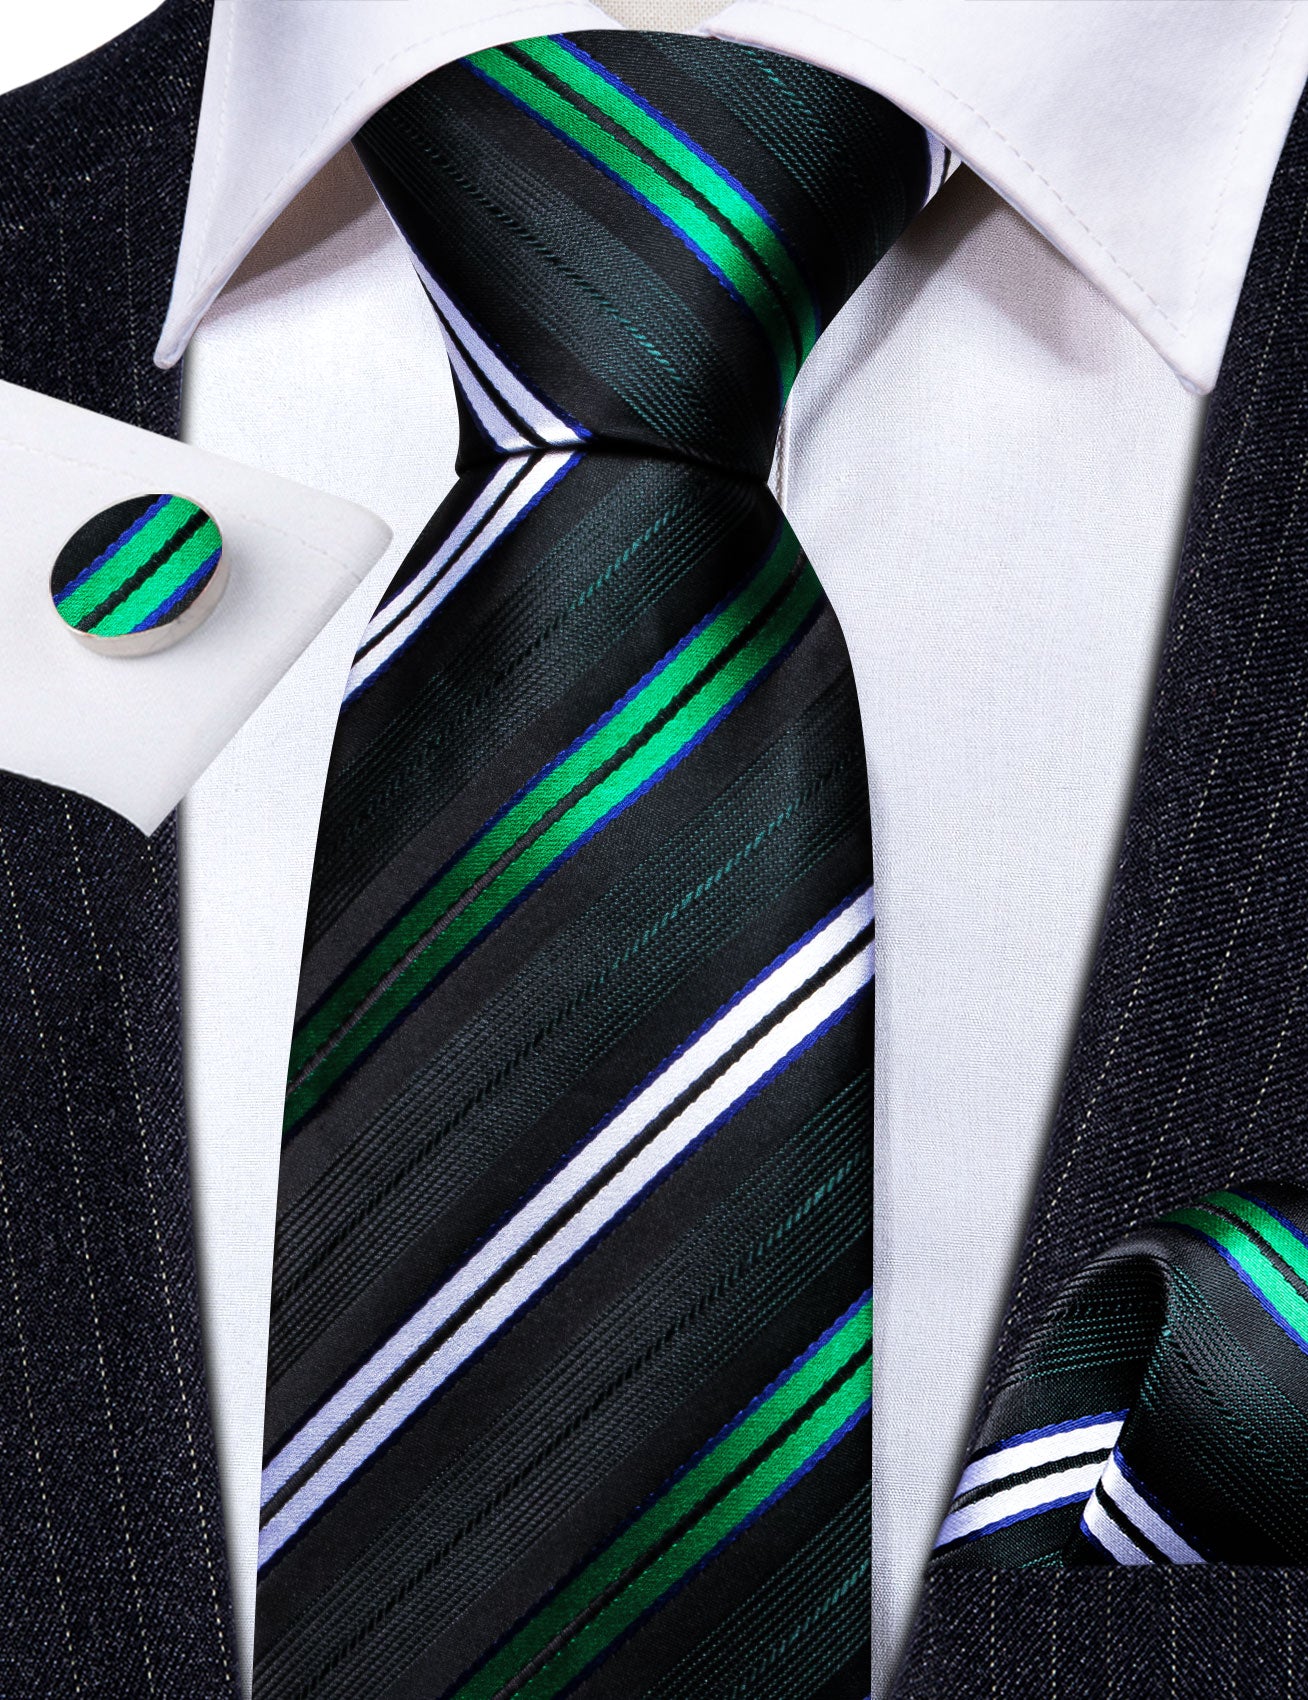 Green White Striped Silk Tie Handkerchief Cufflinks Set